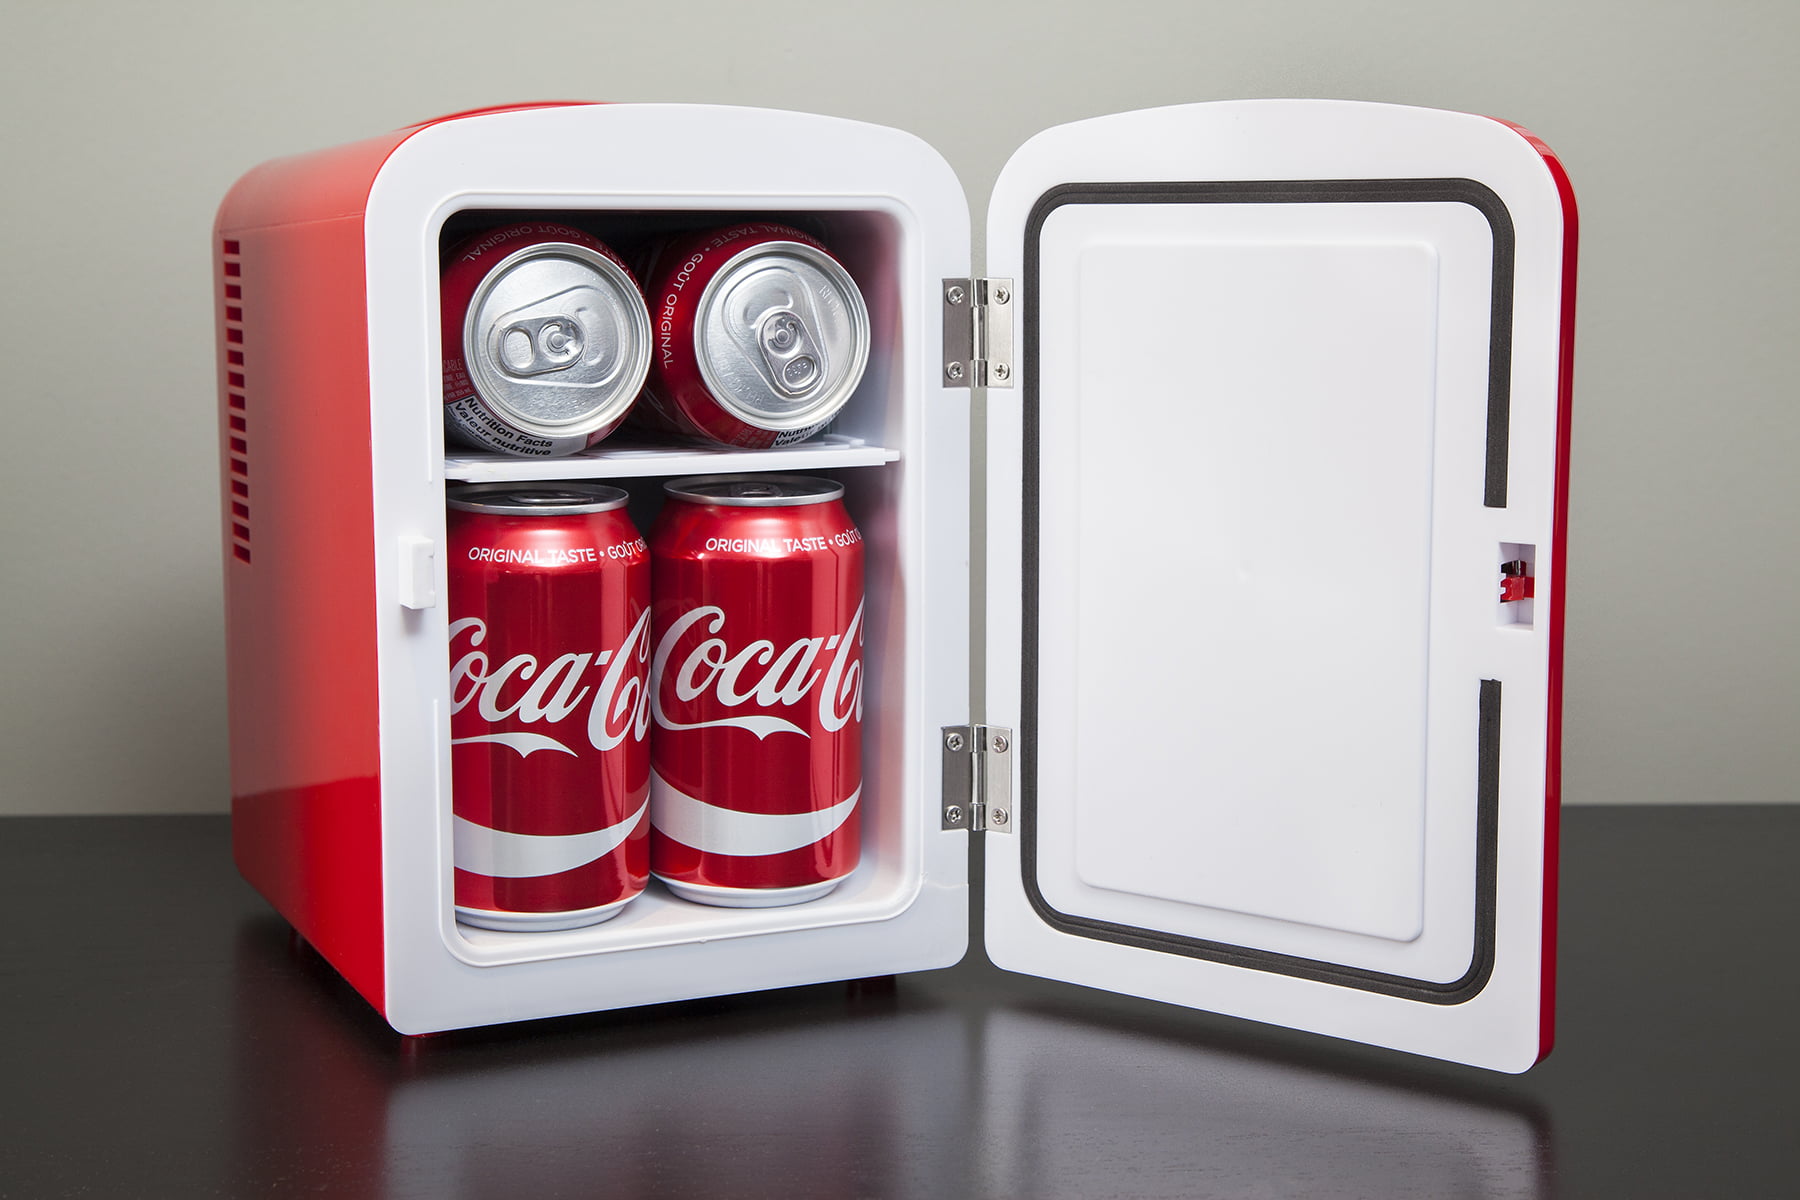 Koolatron Coca-Cola 6 Coke Can Personal Mini Fridge Cooler Quiet 120V AC 12V DC